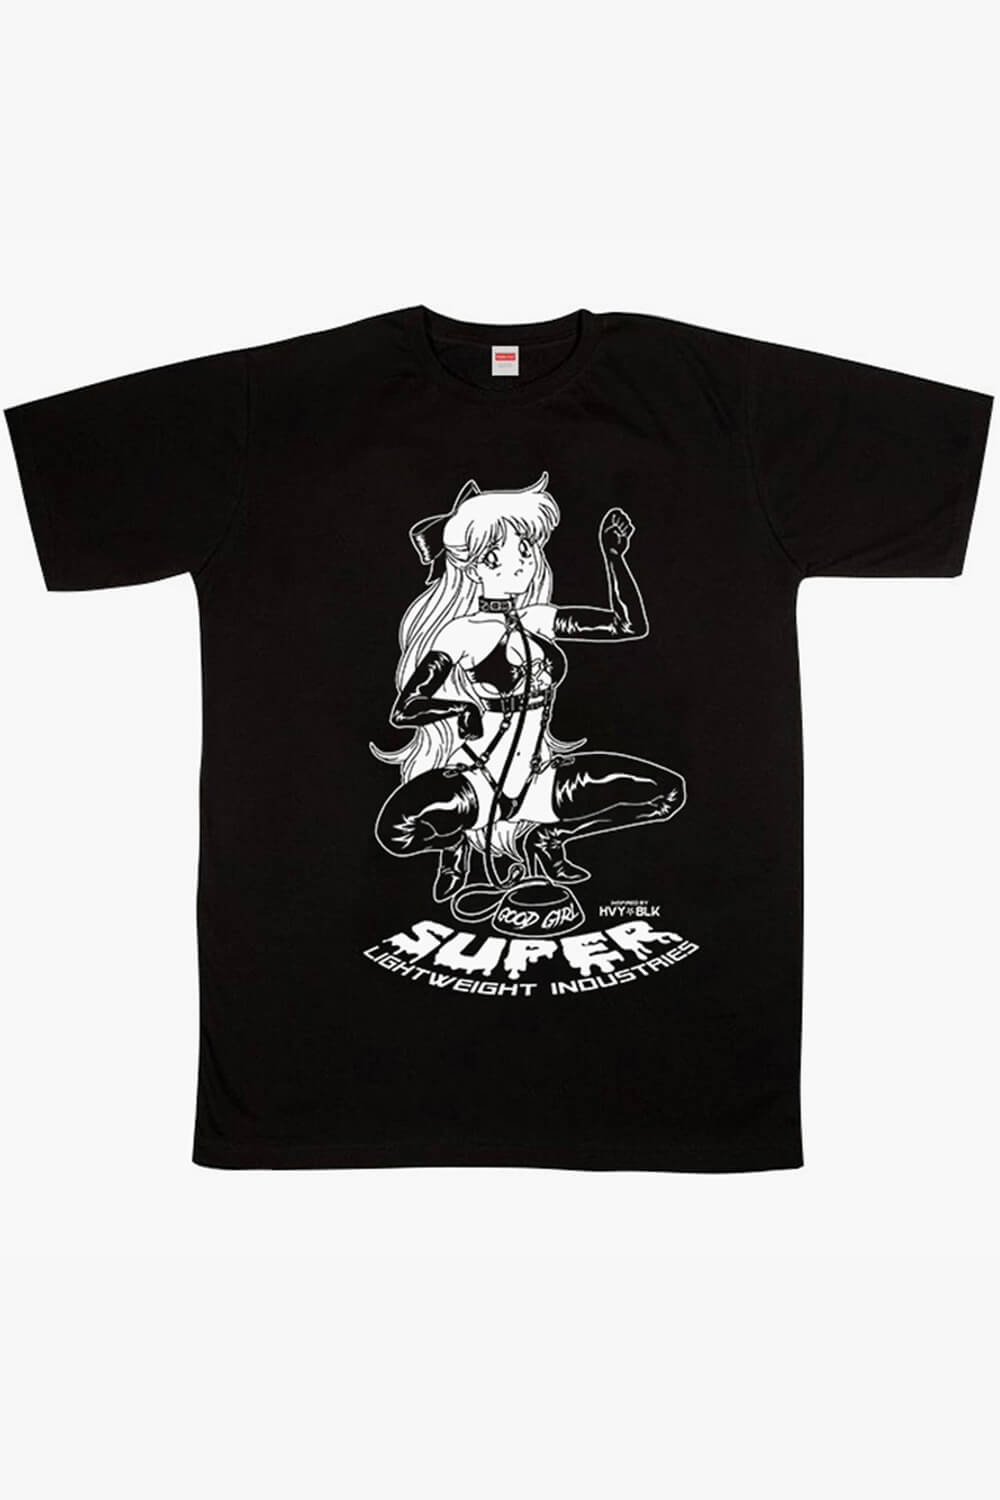 HVY BLK Nymph Sailor Venus T-Shirt Sexy EGirl